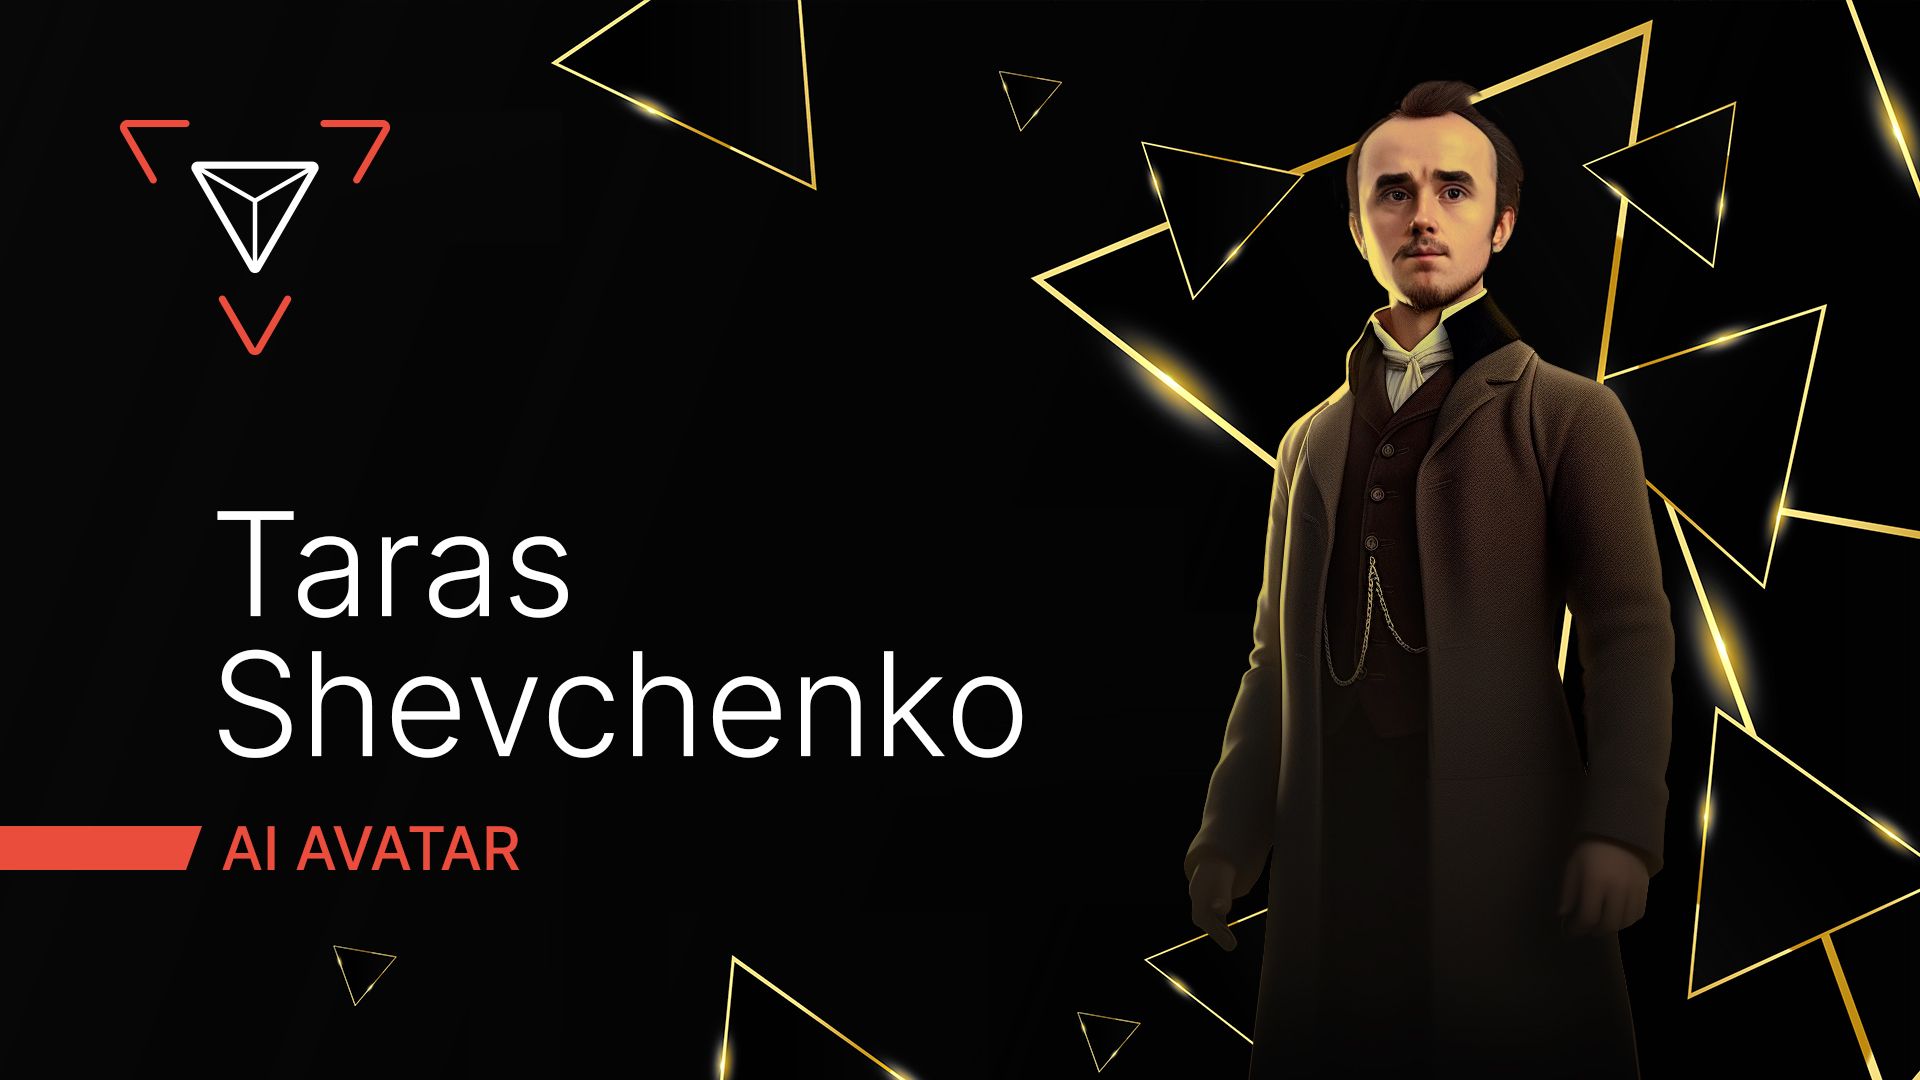 Shevchenko realistic ai avatar presentation